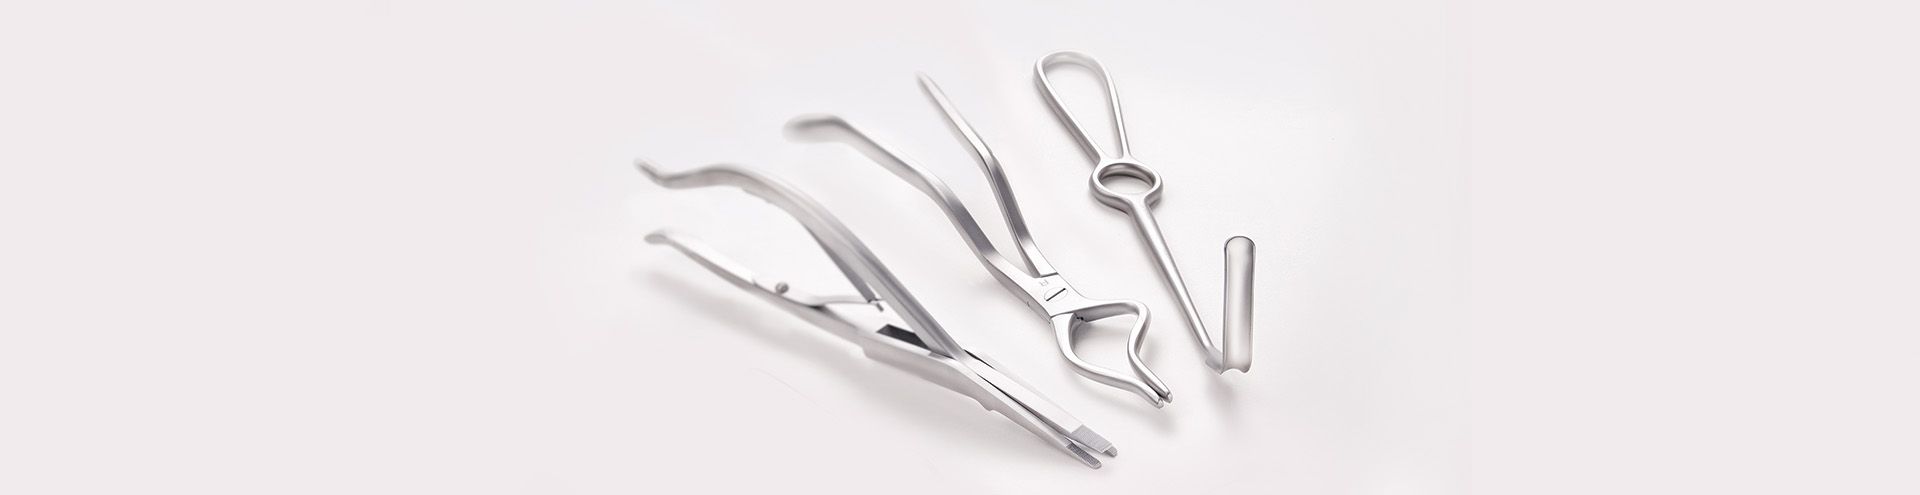 Chirurgische Instrumente für die Mund-, Kiefer- und Gesichtschirurgie